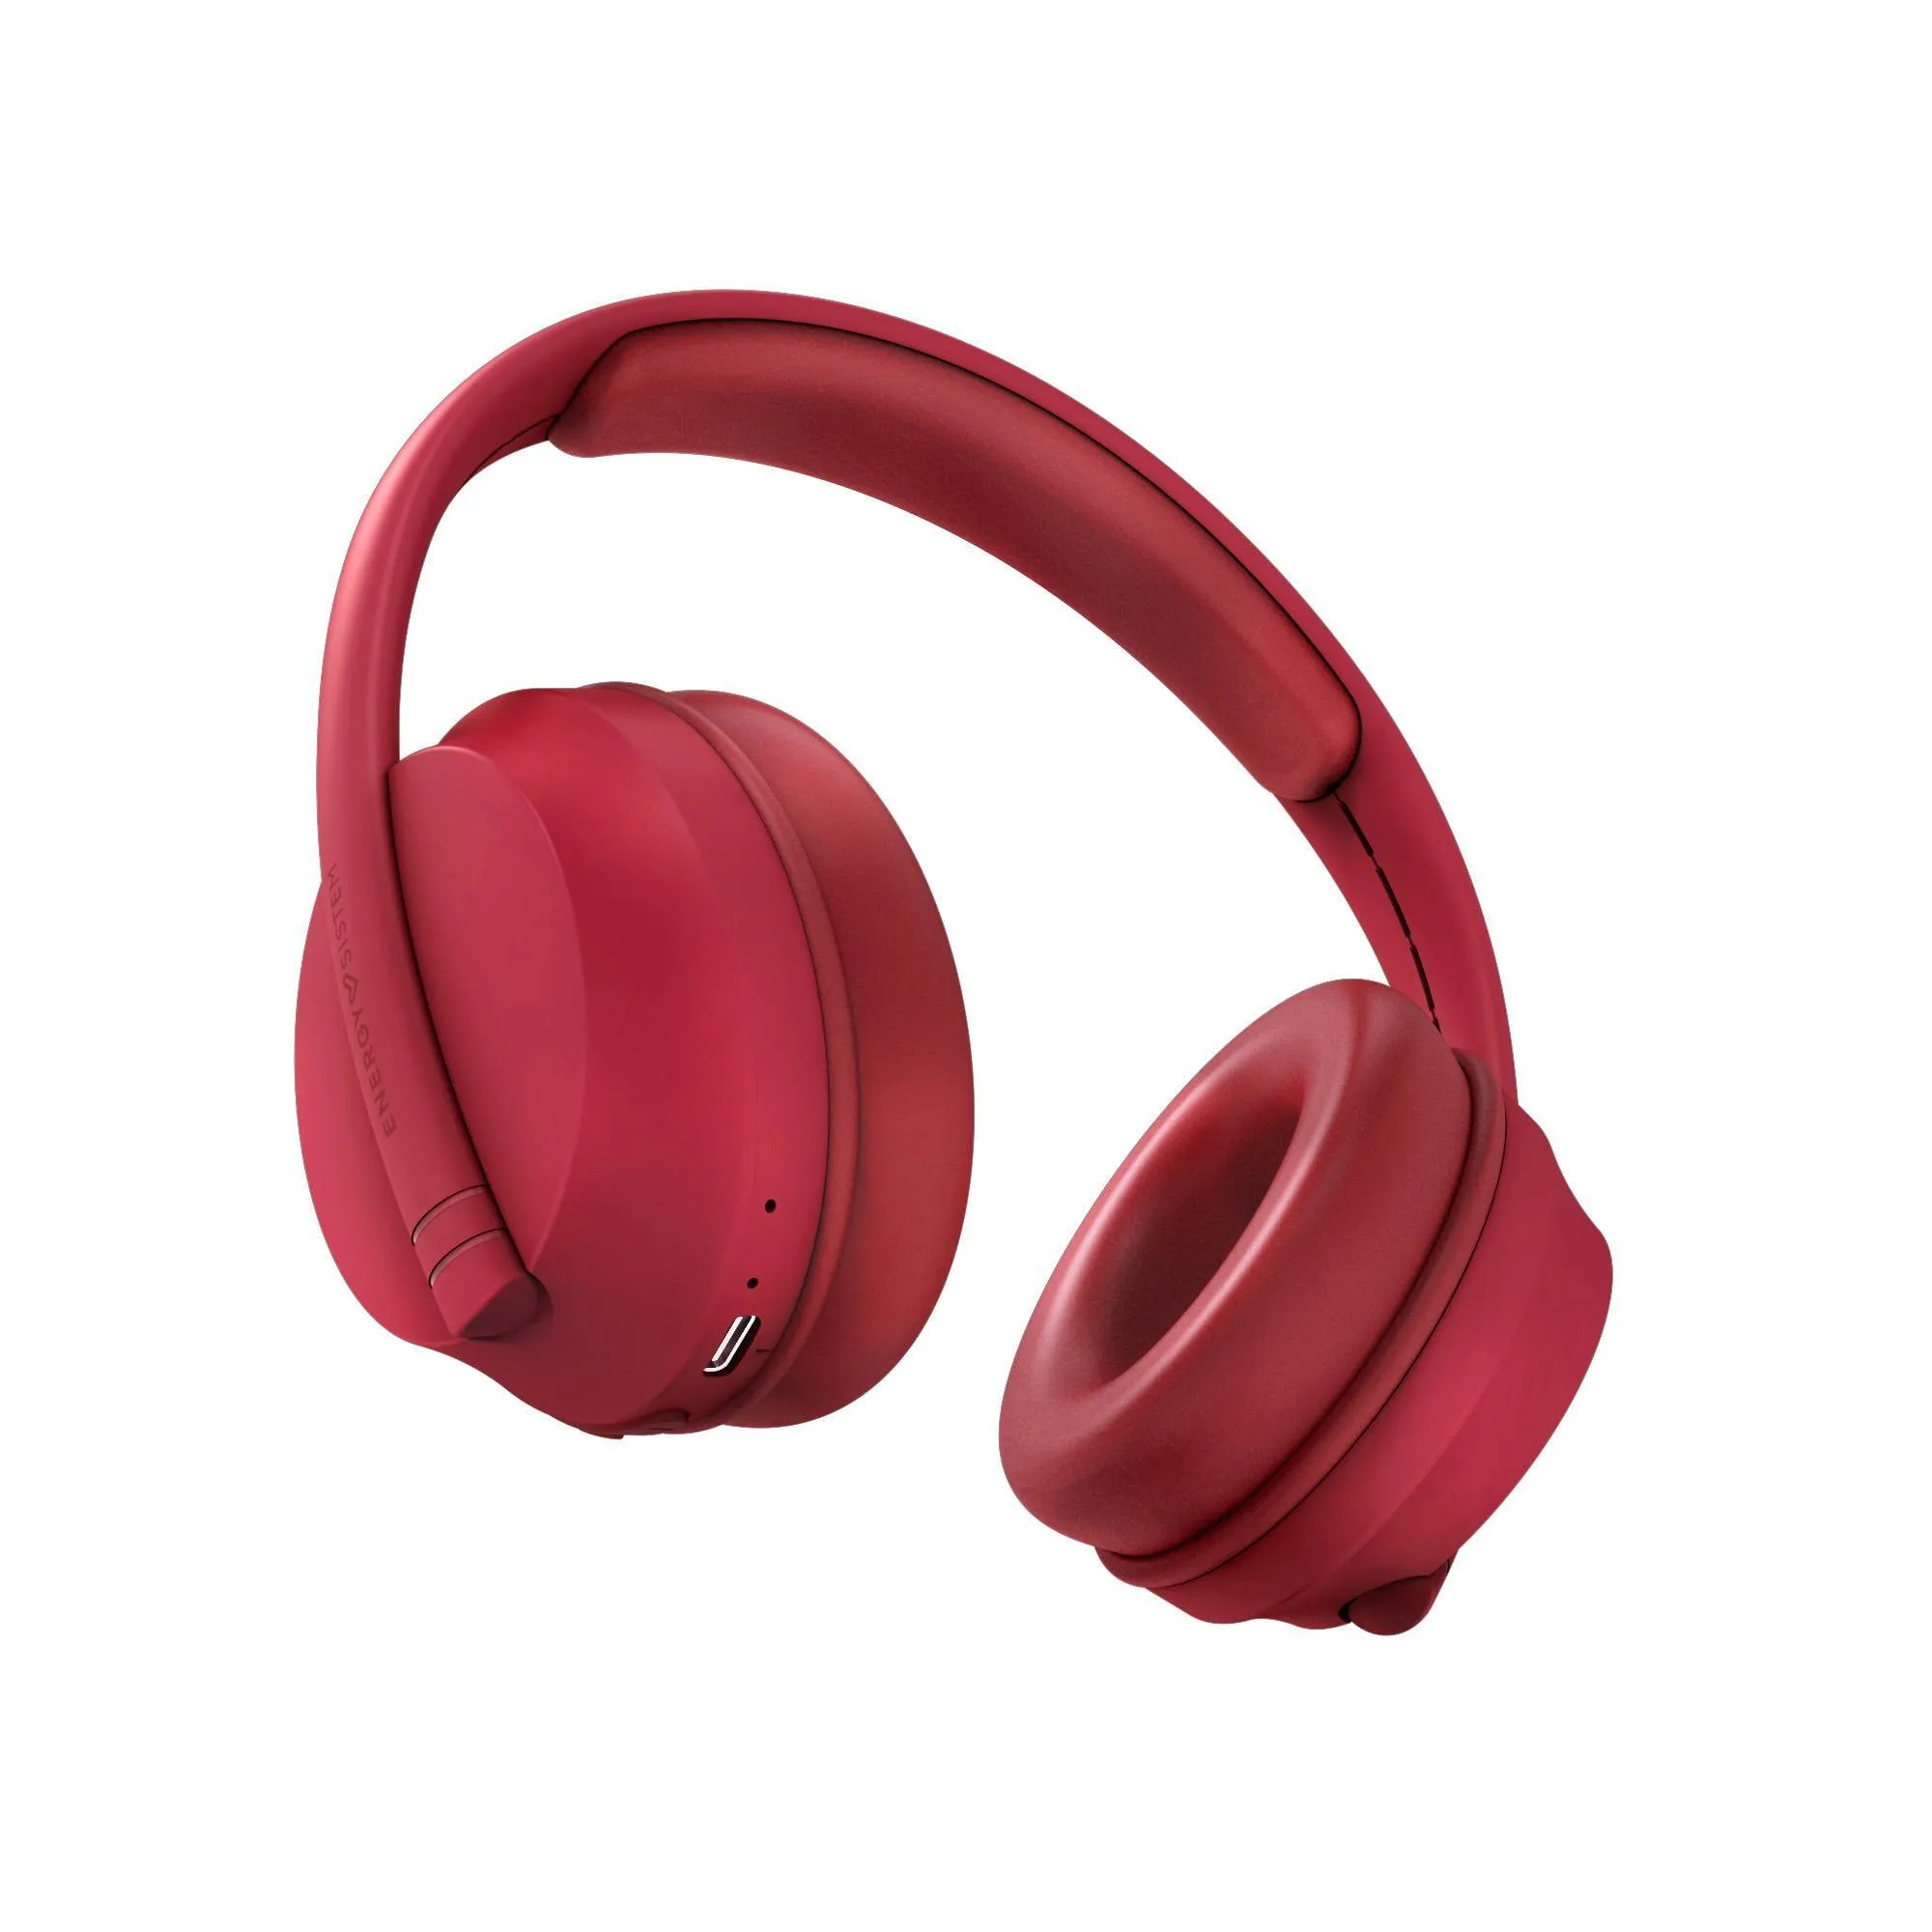 Hoshi Eco - Auriculares Bluetooth